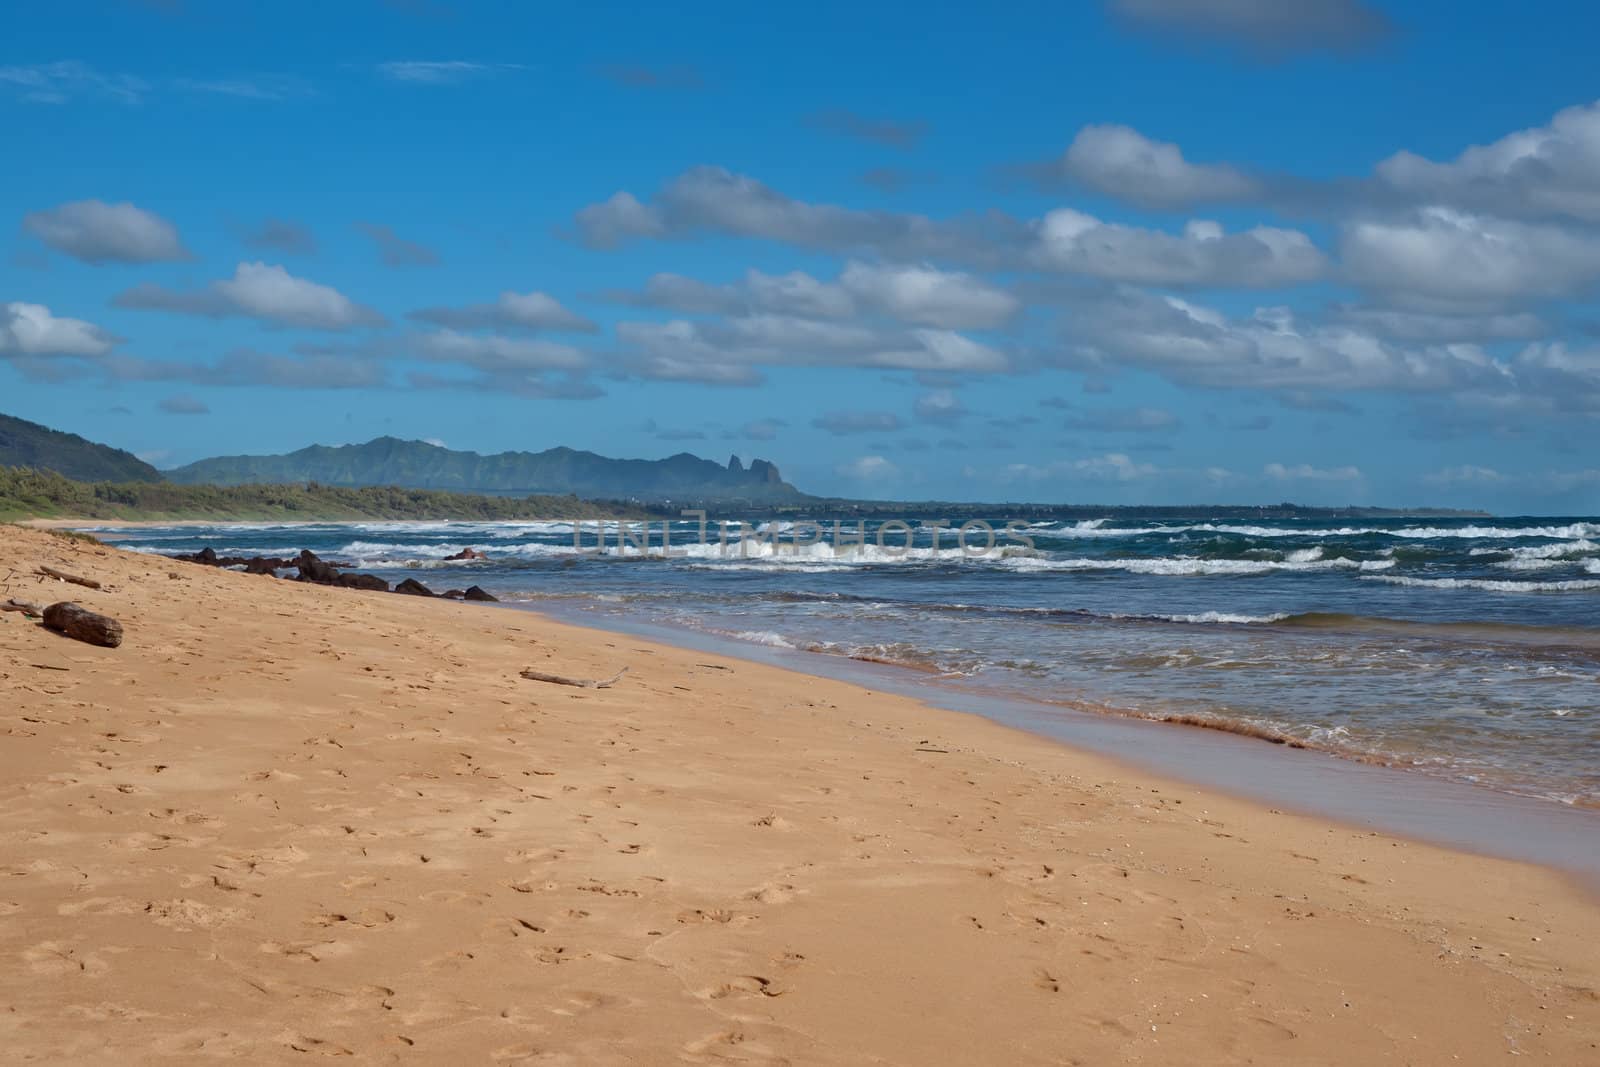 Beach on Kauai Island of Hawaii by Marcus